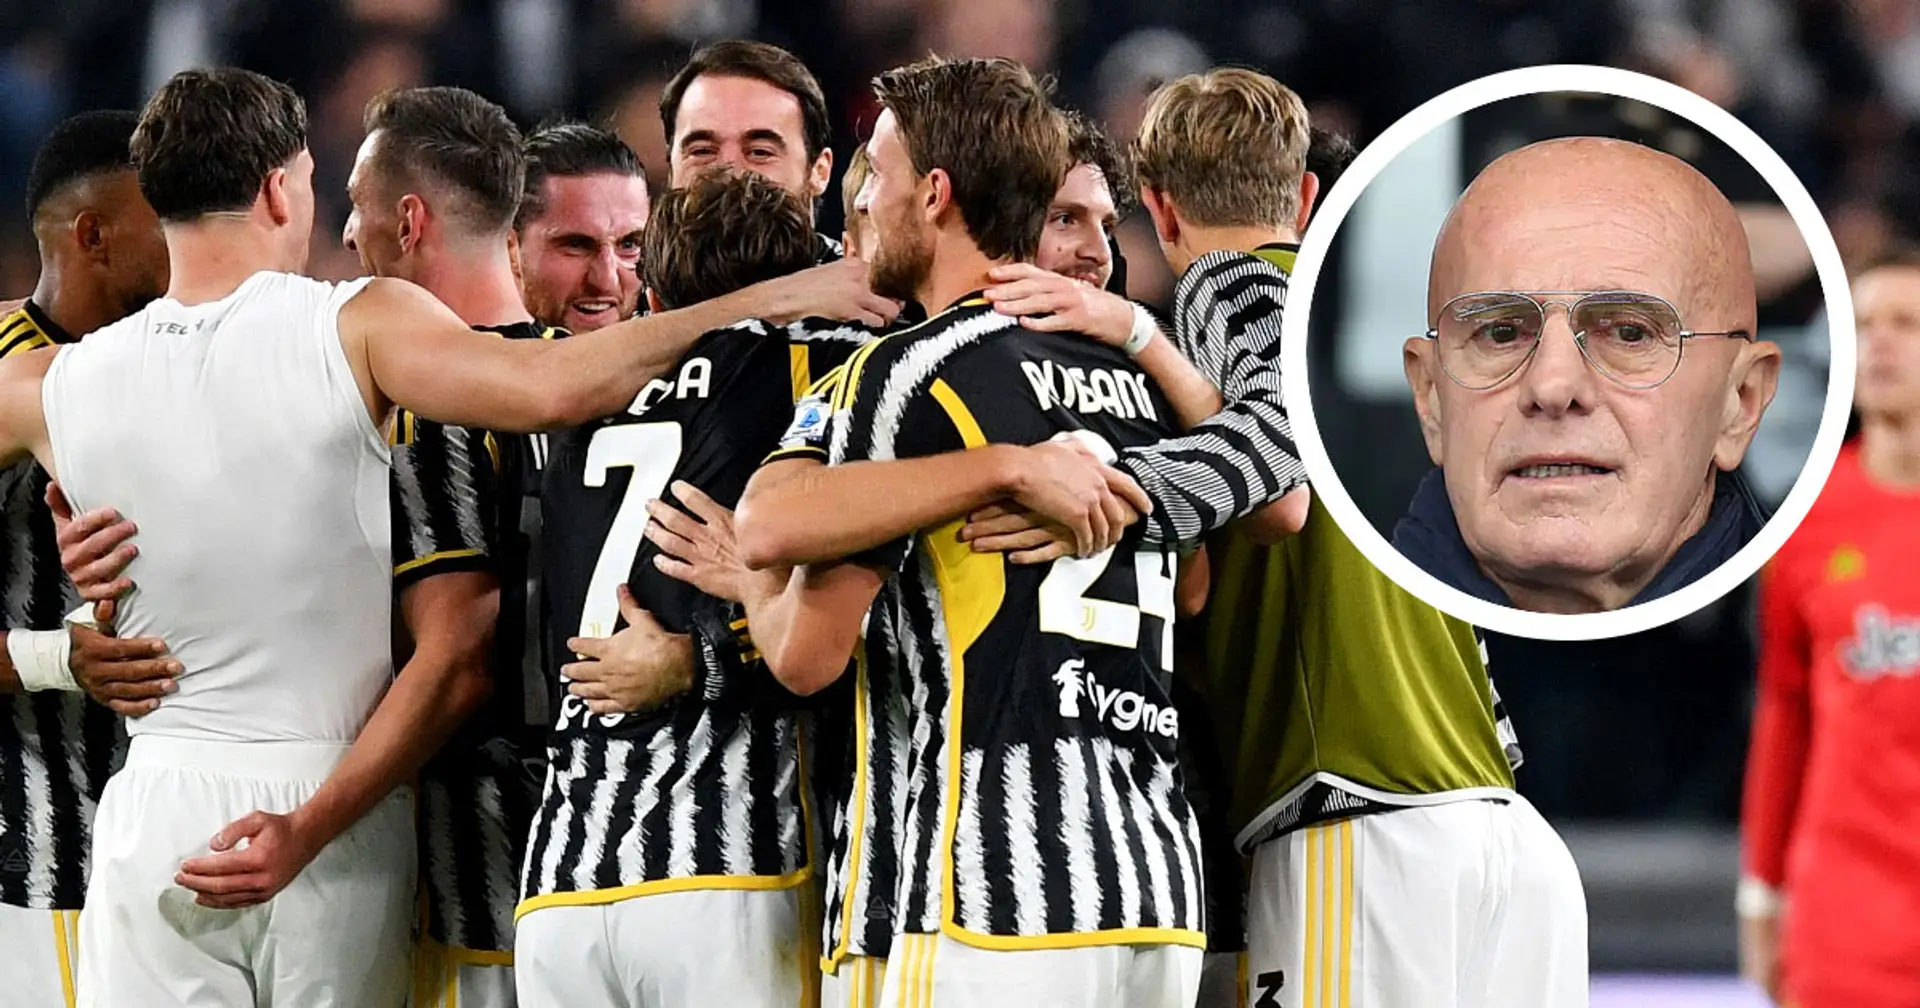 "La Juventus ha vinto 2 Coppe Campioni in 60 anni, io in 3", Sacchi attacca i bianconeri sulla storia europea del club